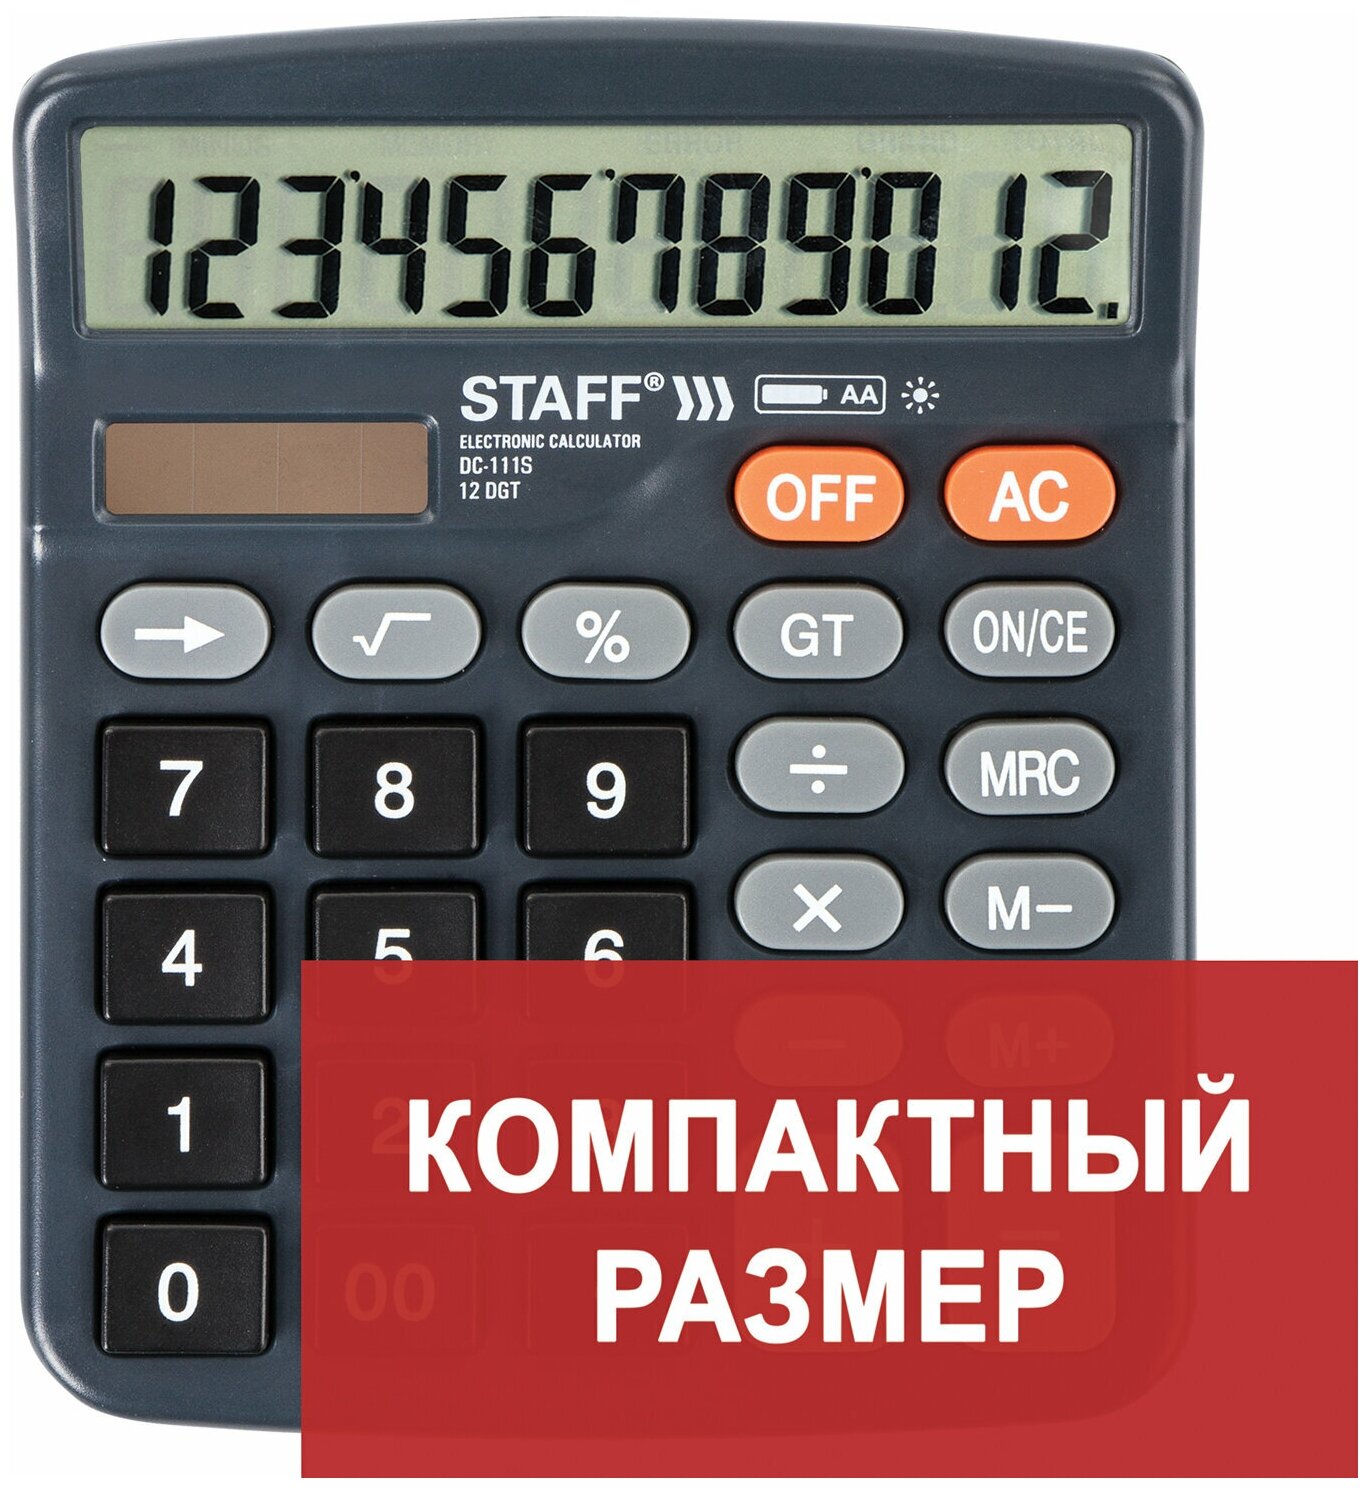 STAFF Калькулятор настольный staff plus dc-111s компактный (150x120 мм) 12 разрядов двойное питание + батарейка аа 250428